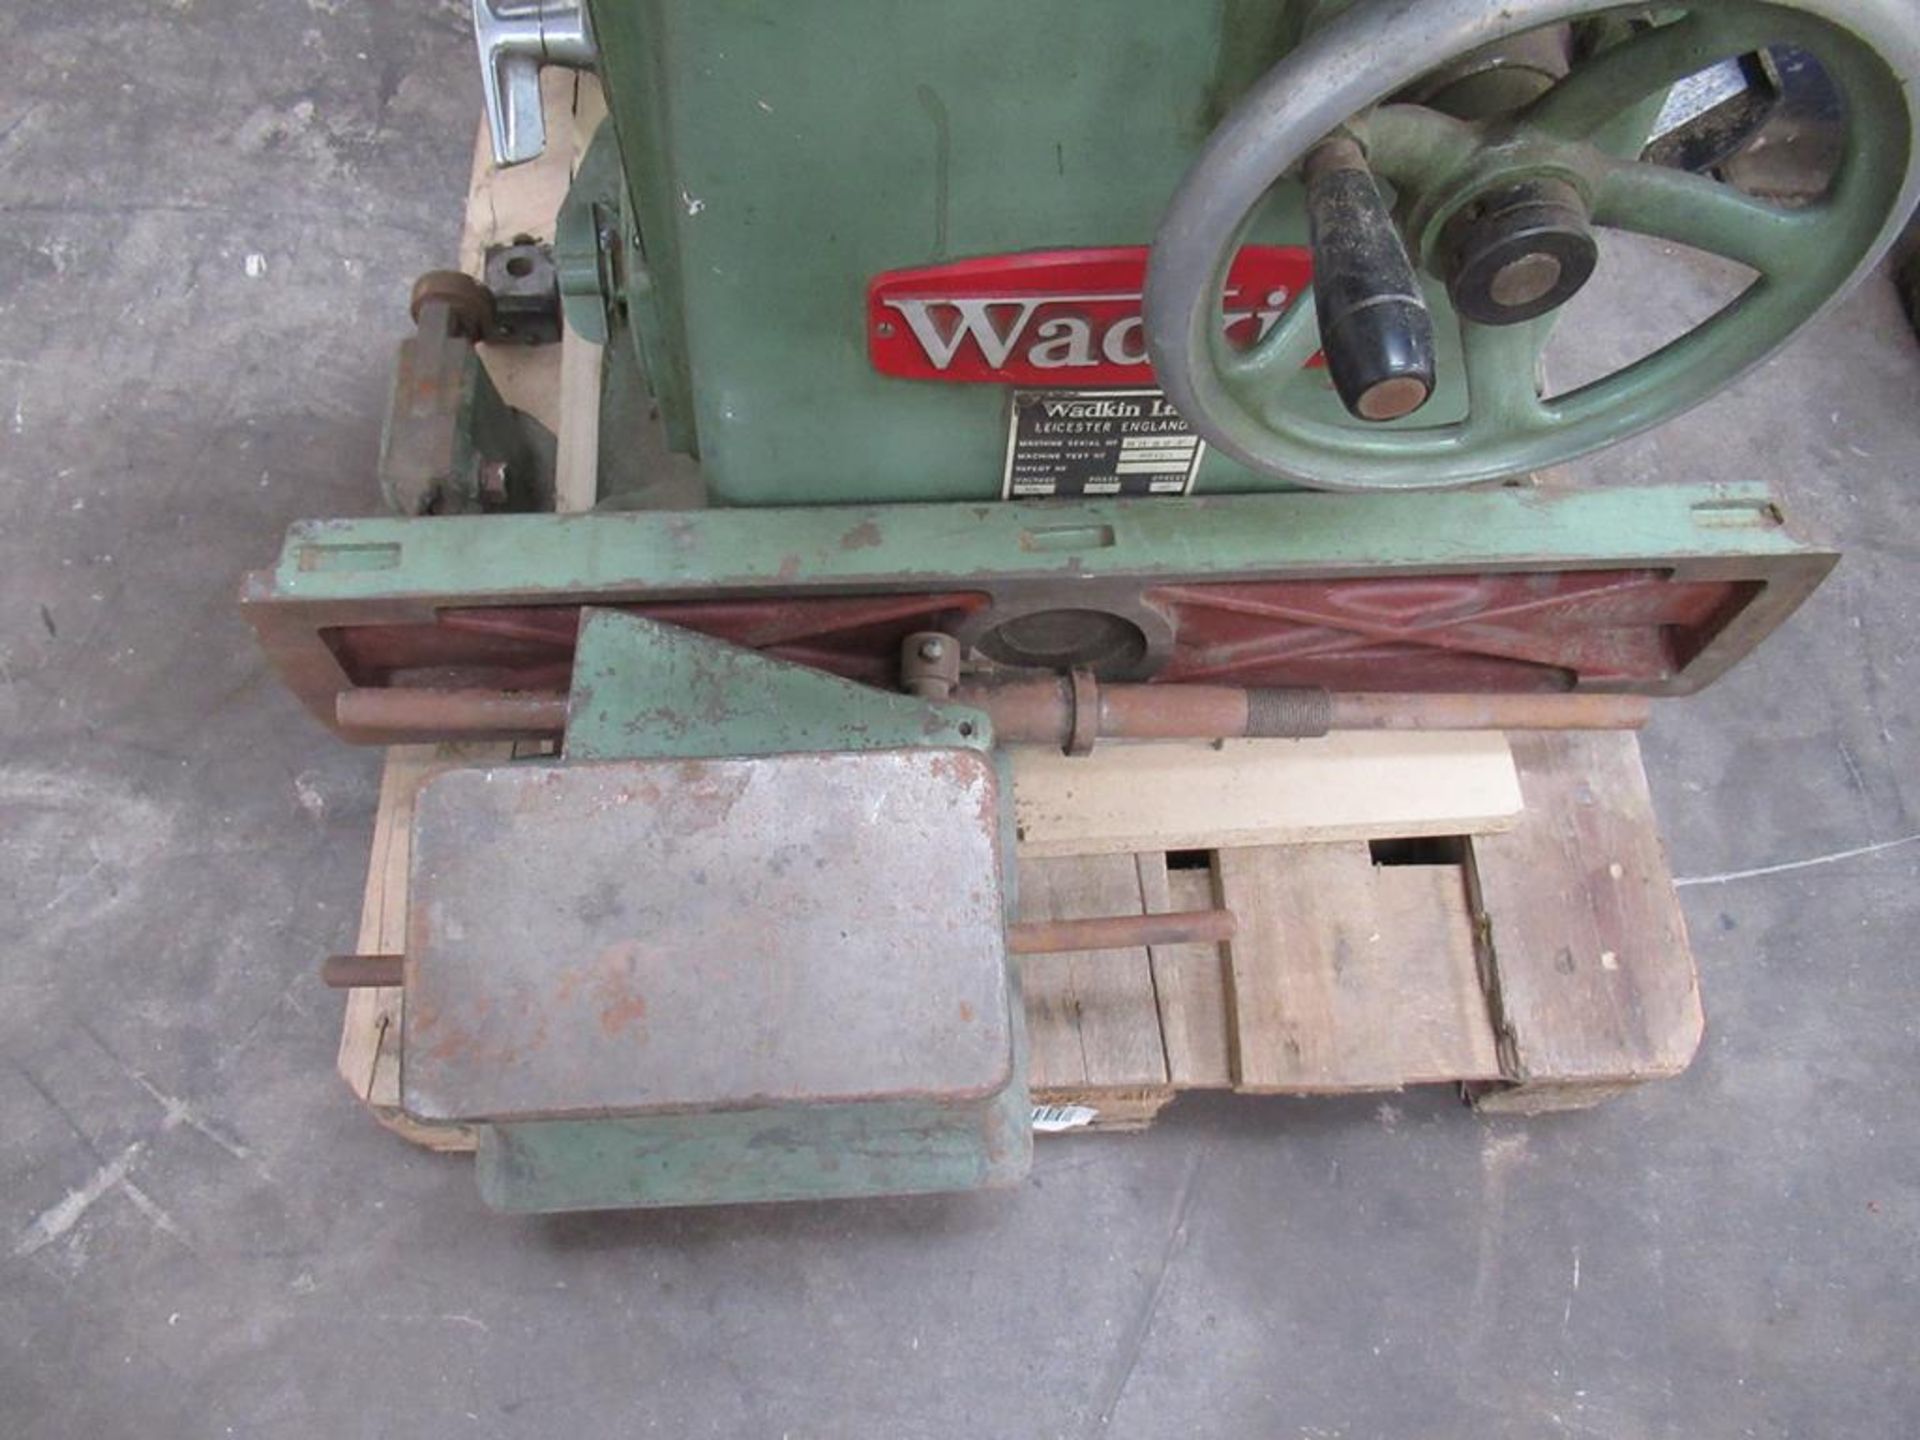 Wadkin Universal tool grinder, S/N NH823, 400V - Image 5 of 7